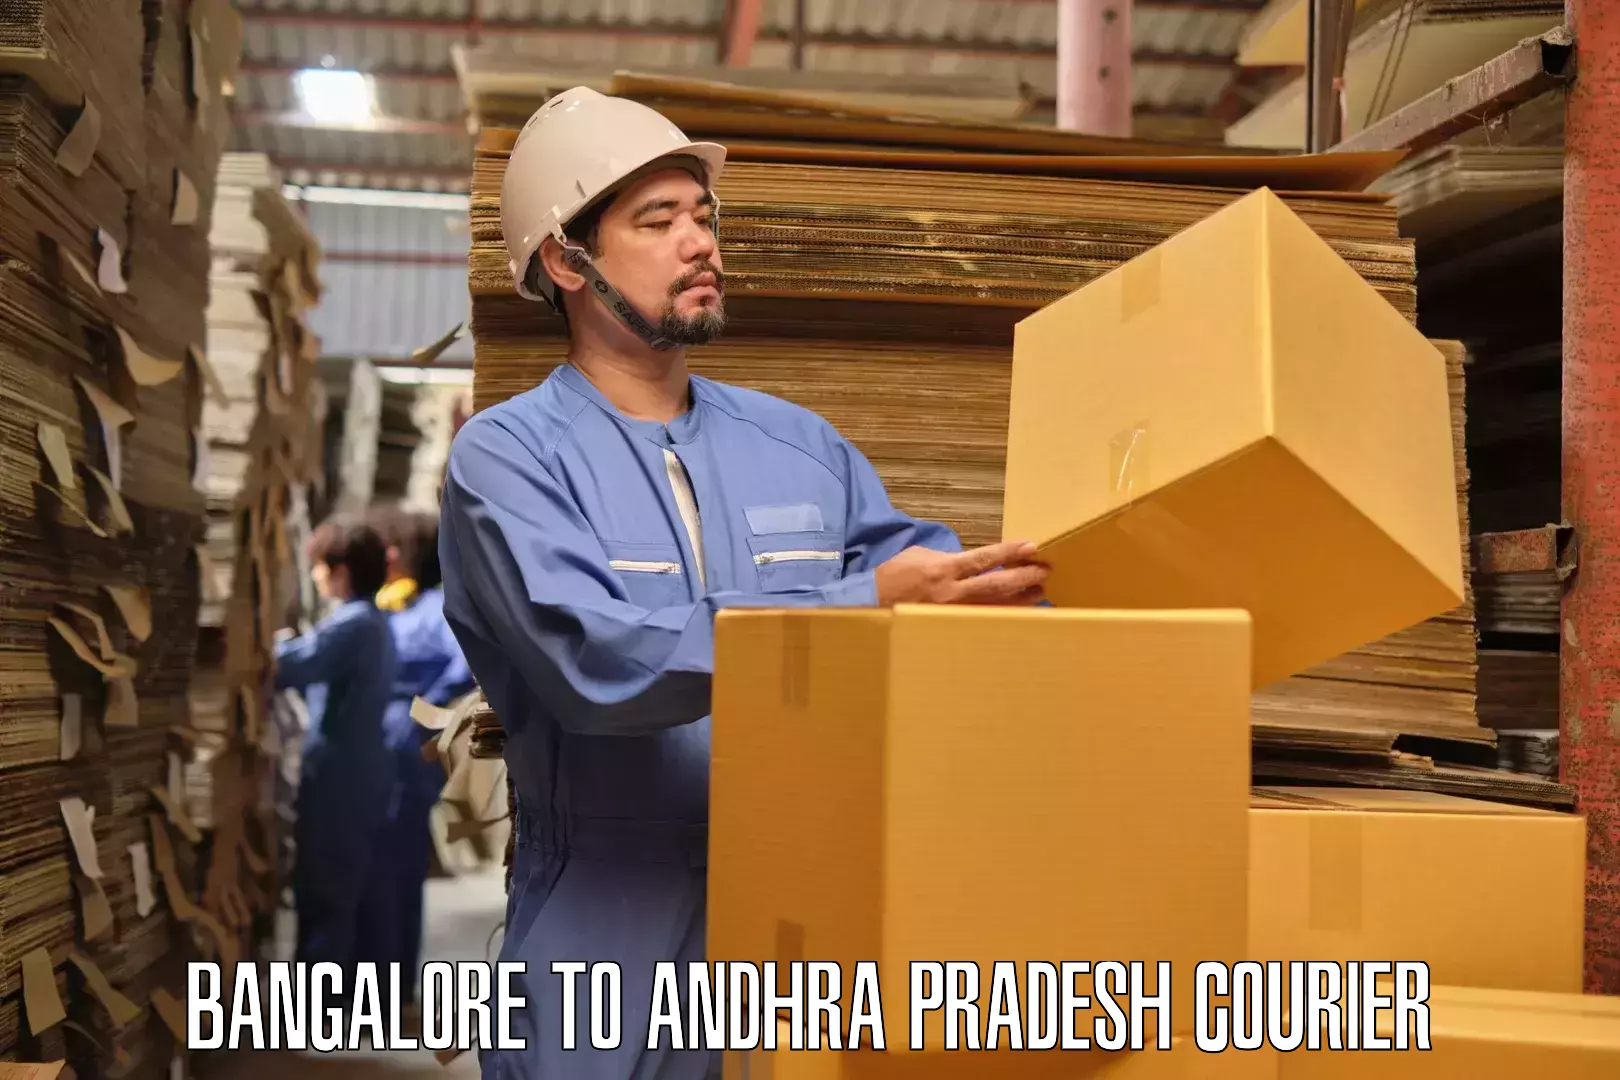 Furniture moving experts in Bangalore to Konduru